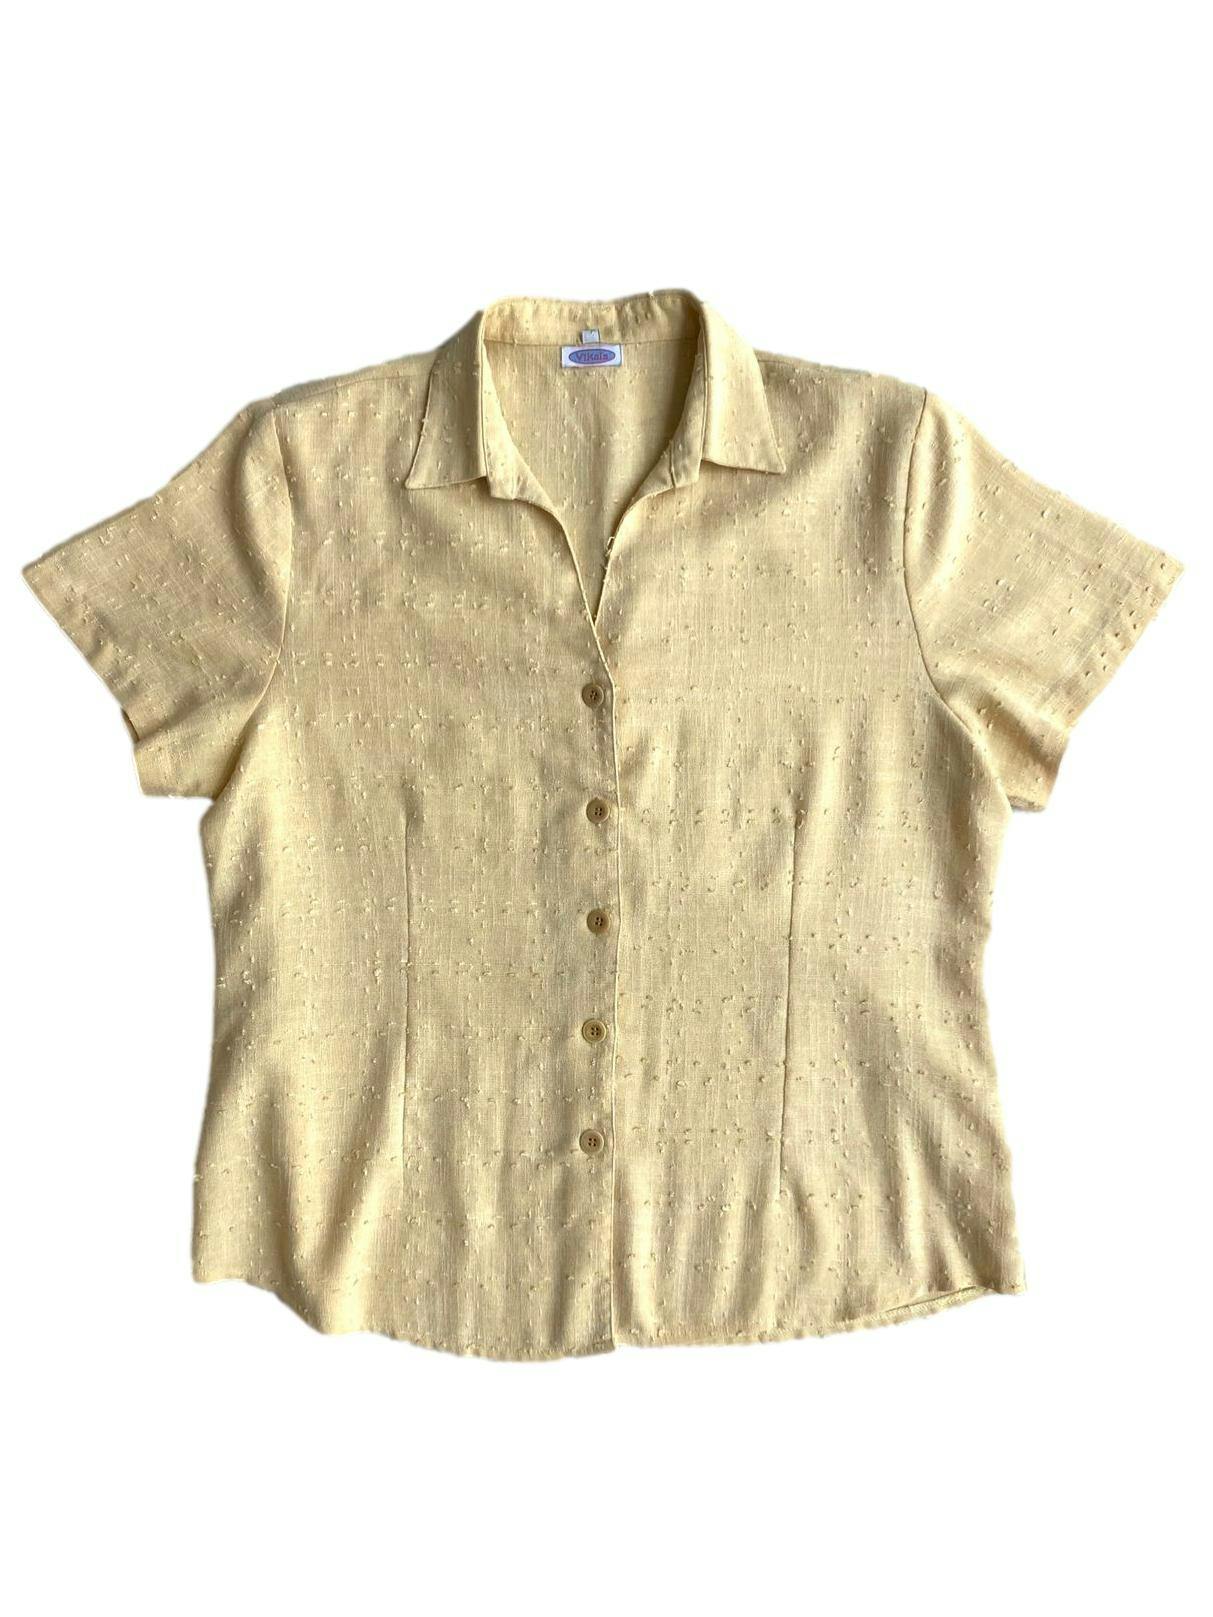 Blusa Vikals amarillo pastel con hombreras, botones delanteros, estampado de pequeñas bolitas en relieve. Busto: 104 cm, Largo: 62 cm.